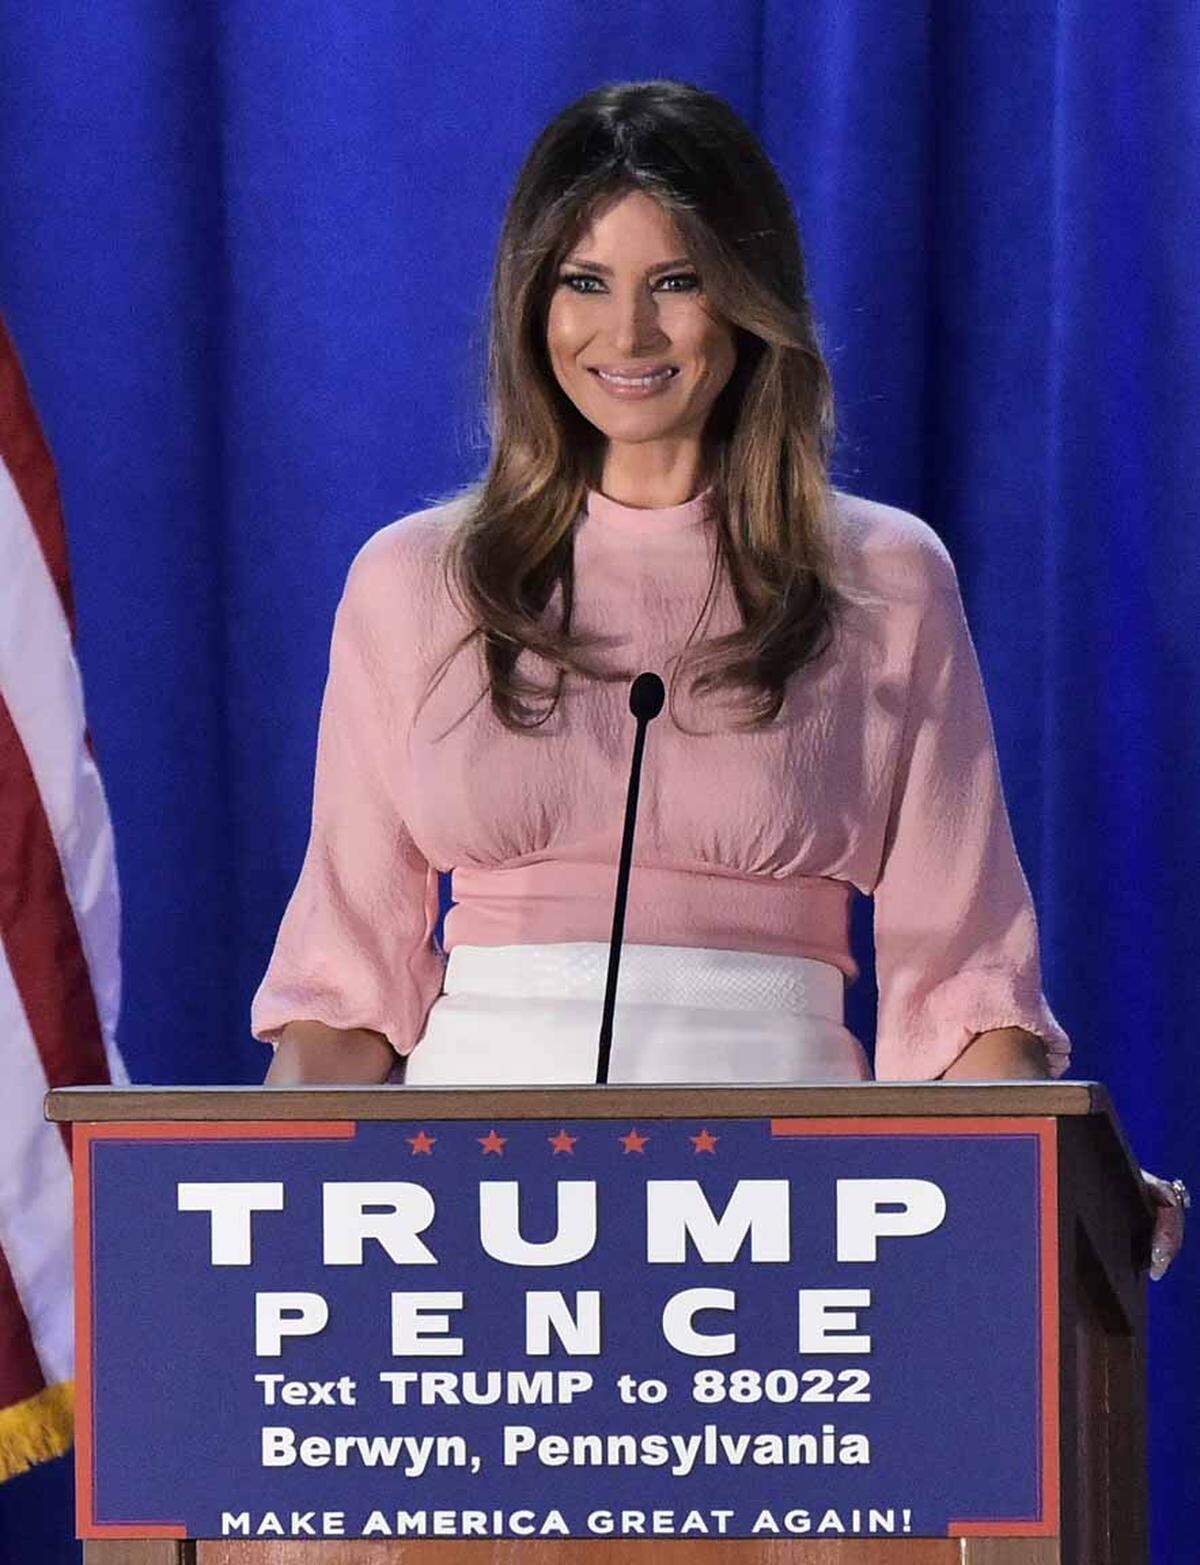 Bei ihrer zweiten Rede in Pennsylvania trug sie eine rosarote Bluse von Emila Wickstead und einen weißen Bleistiftrock.